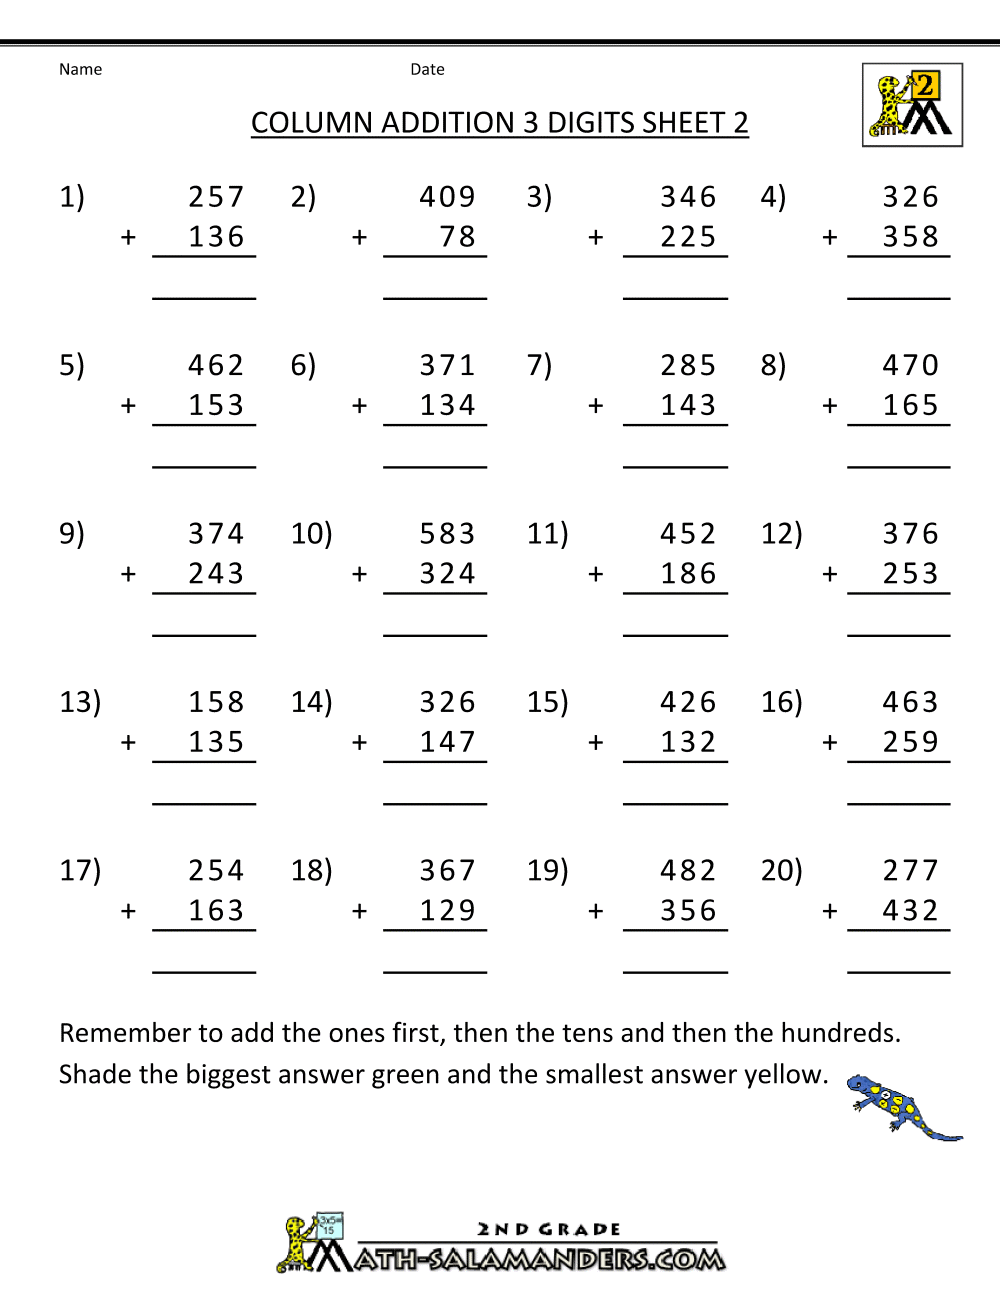 missing-number-worksheet-new-704-missing-number-addition-ks2